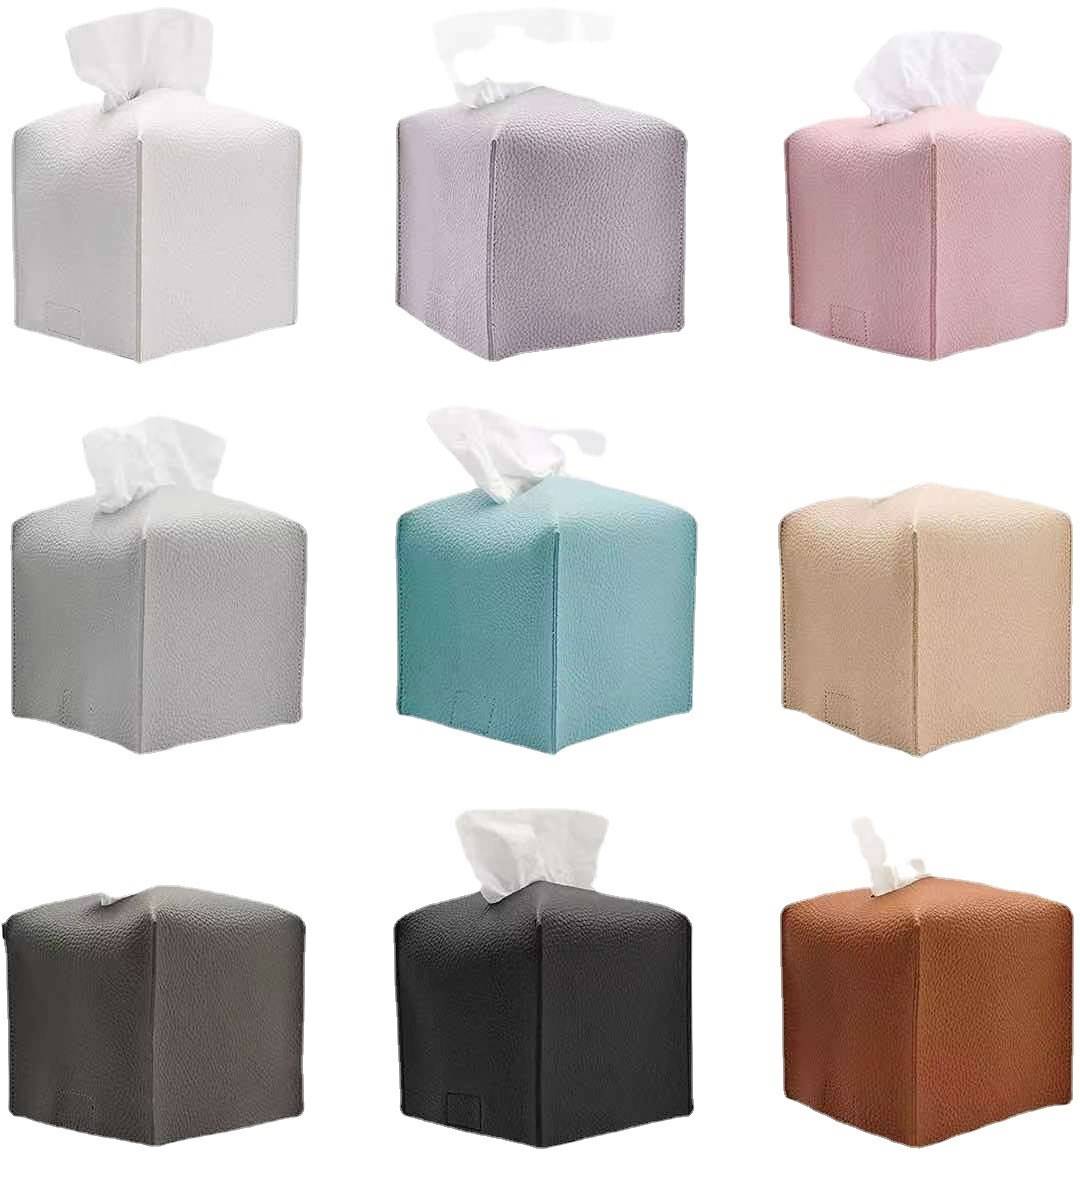 2023年新款欧车载纸巾盒 家用抽纸纸巾袋 客厅卫浴防水卷筒折叠纸